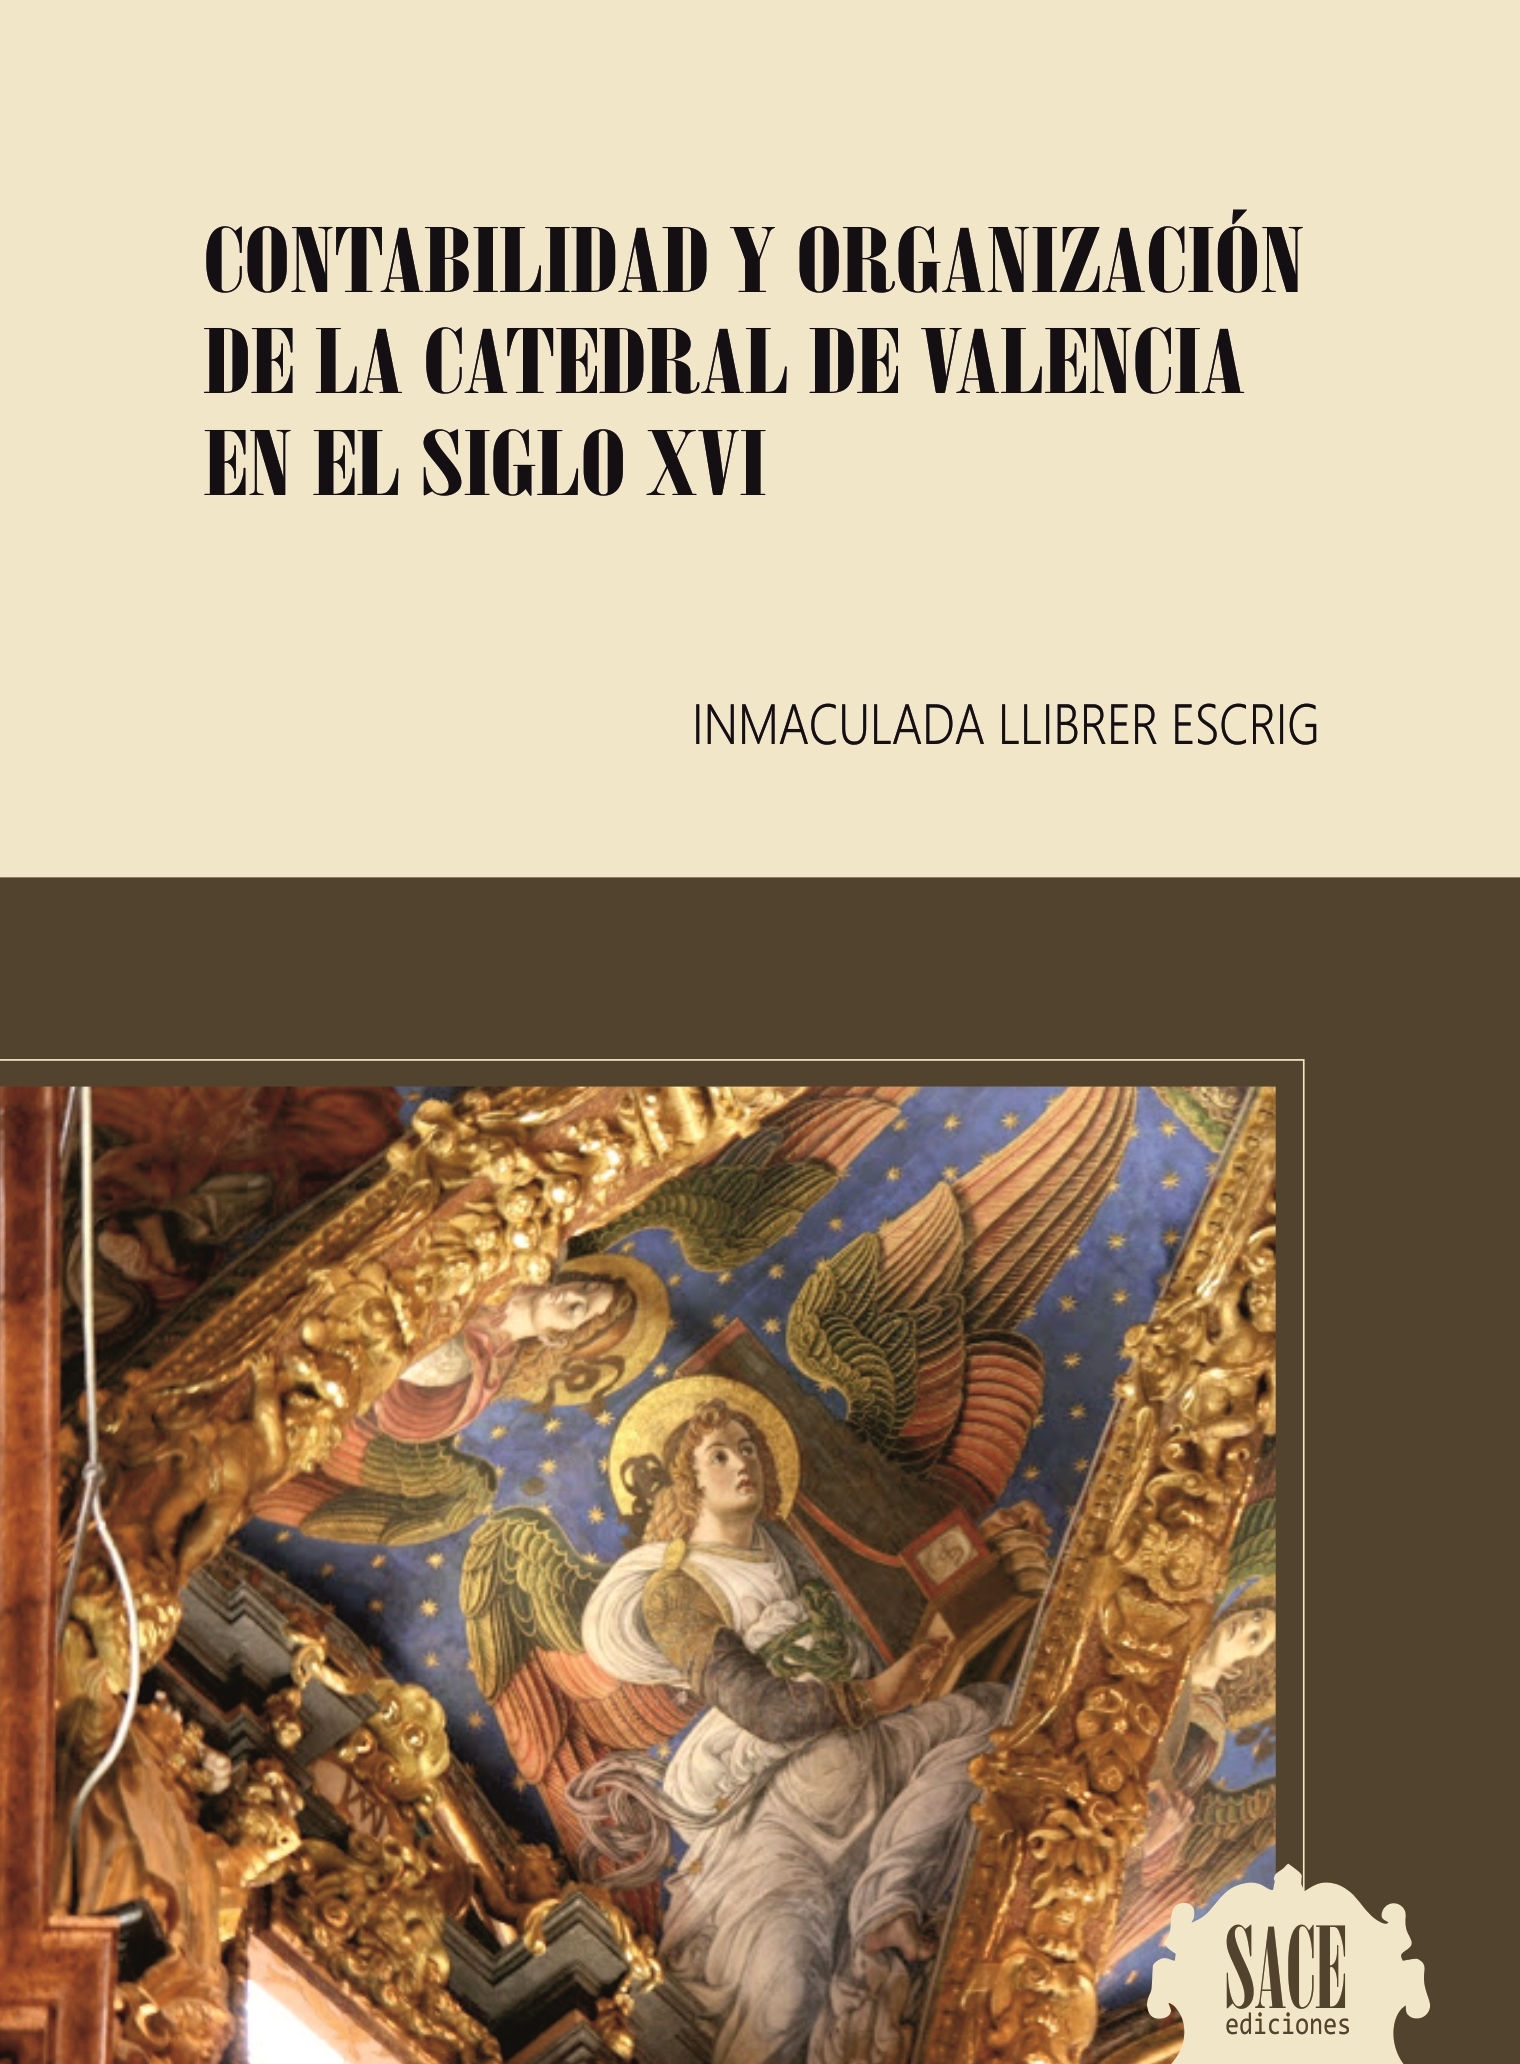 Contabilidad y organización de la Catedral de Valencia en el siglo XVI